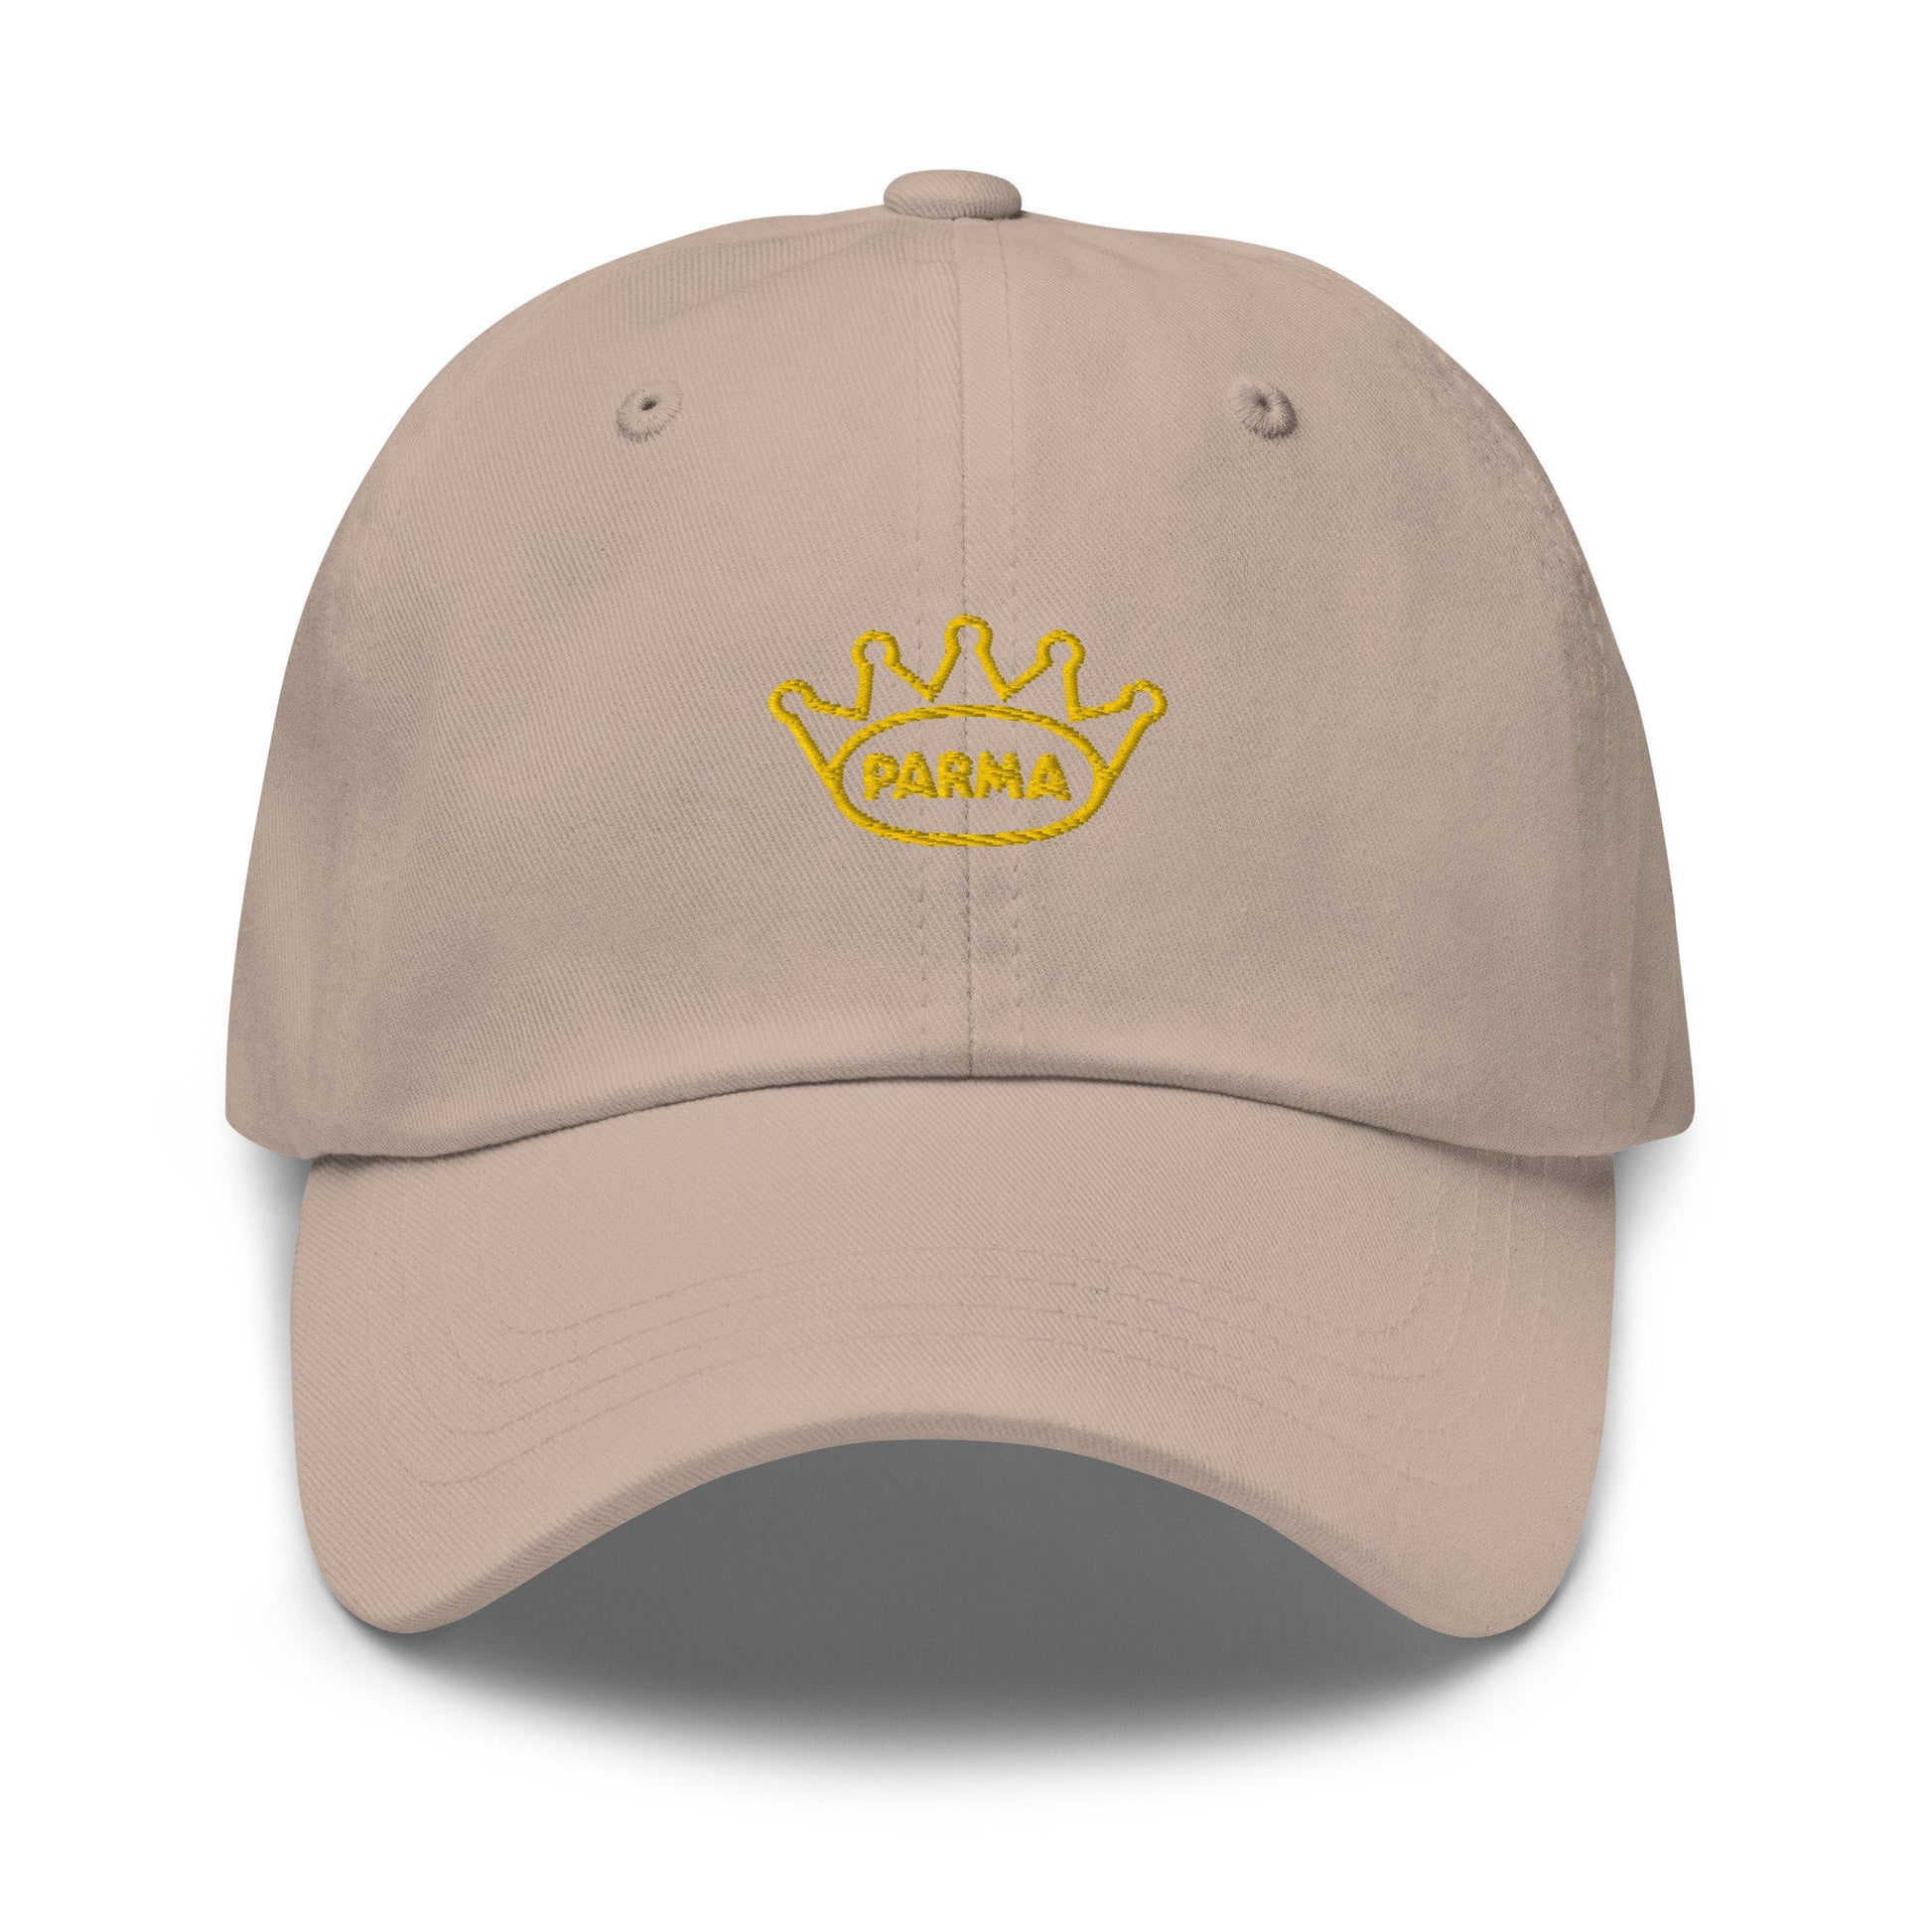 Prosciutto di Parma Hat - Italian Deli Fan gift - Parma Ducal Crown Logo - Cotton embroidered Cap